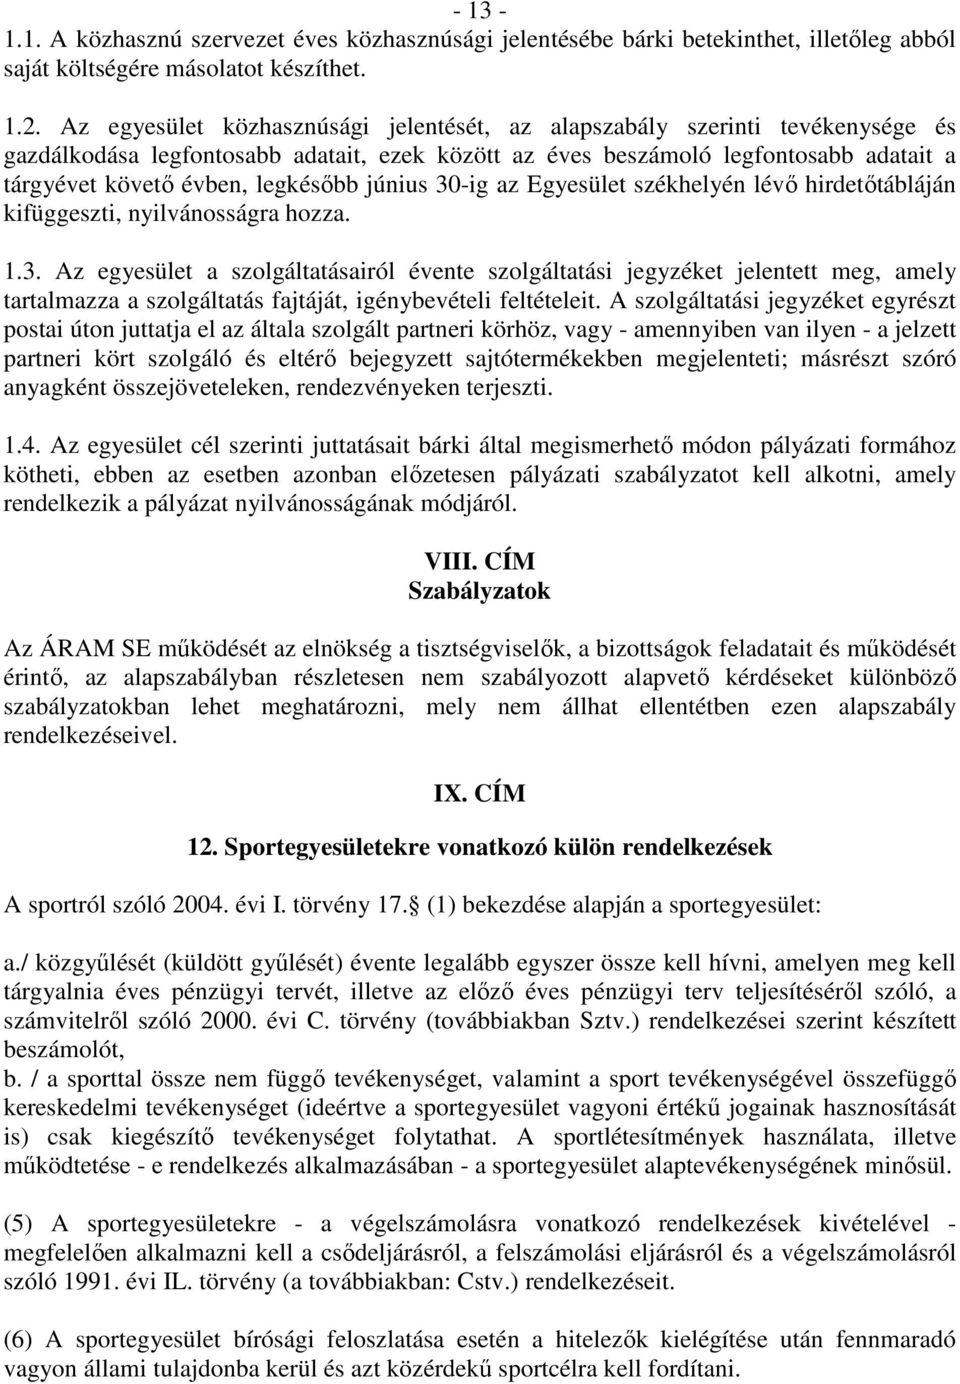 legkésıbb június 30-ig az Egyesület székhelyén lévı hirdetıtábláján kifüggeszti, nyilvánosságra hozza. 1.3. Az egyesület a szolgáltatásairól évente szolgáltatási jegyzéket jelentett meg, amely tartalmazza a szolgáltatás fajtáját, igénybevételi feltételeit.